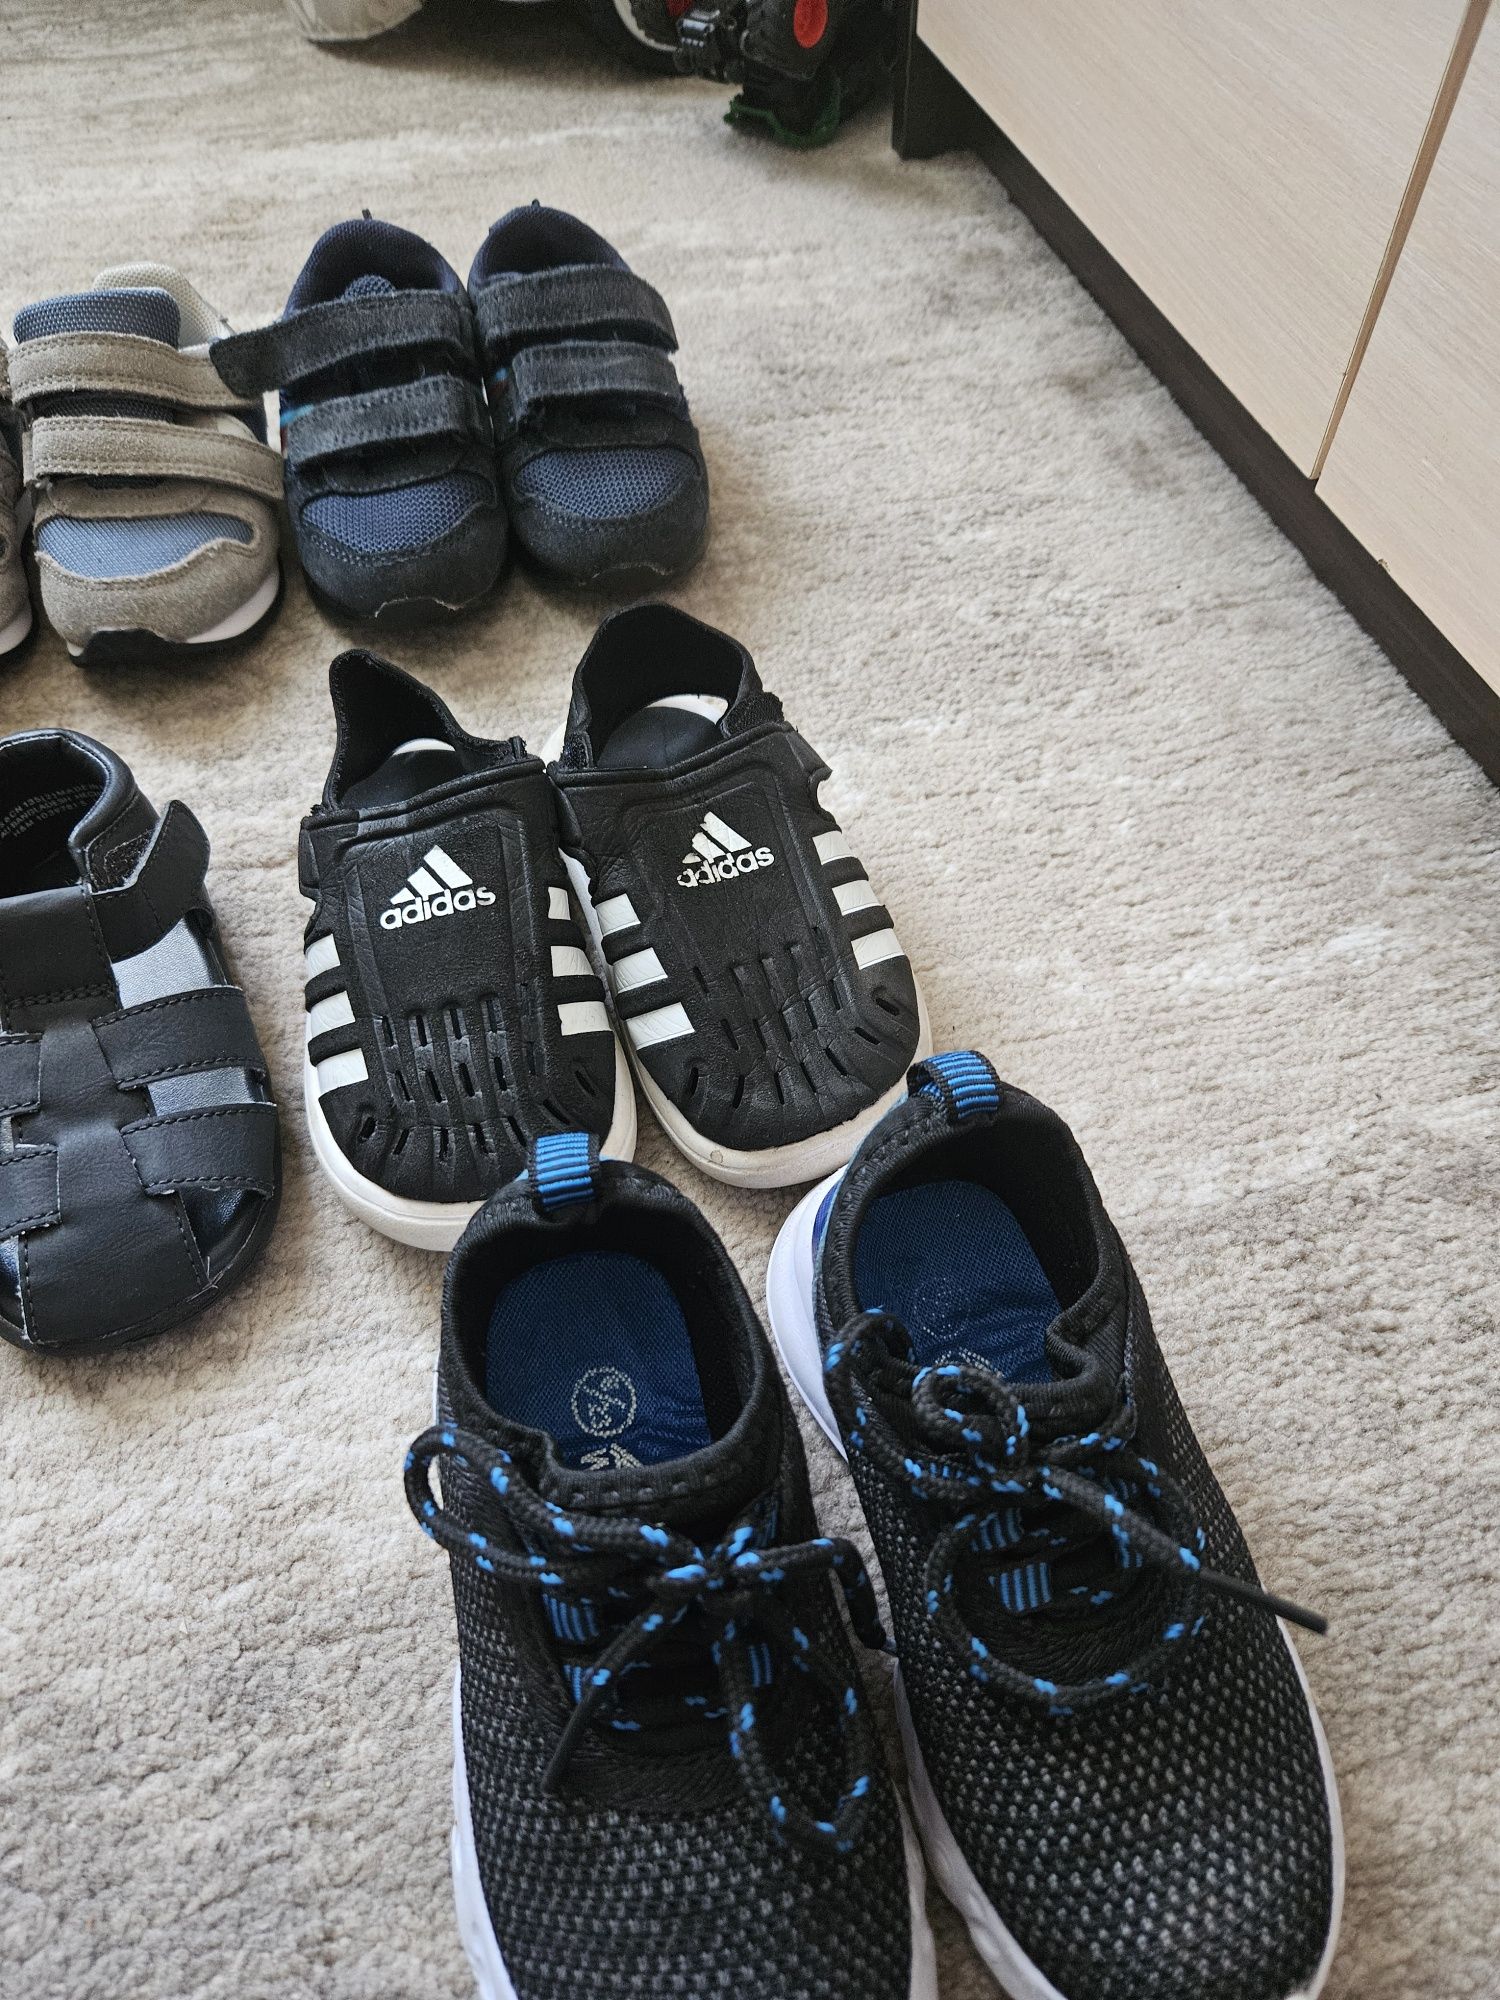 Дитяче взуття (босоніжки, сандалі, кросівки на хлопчика)